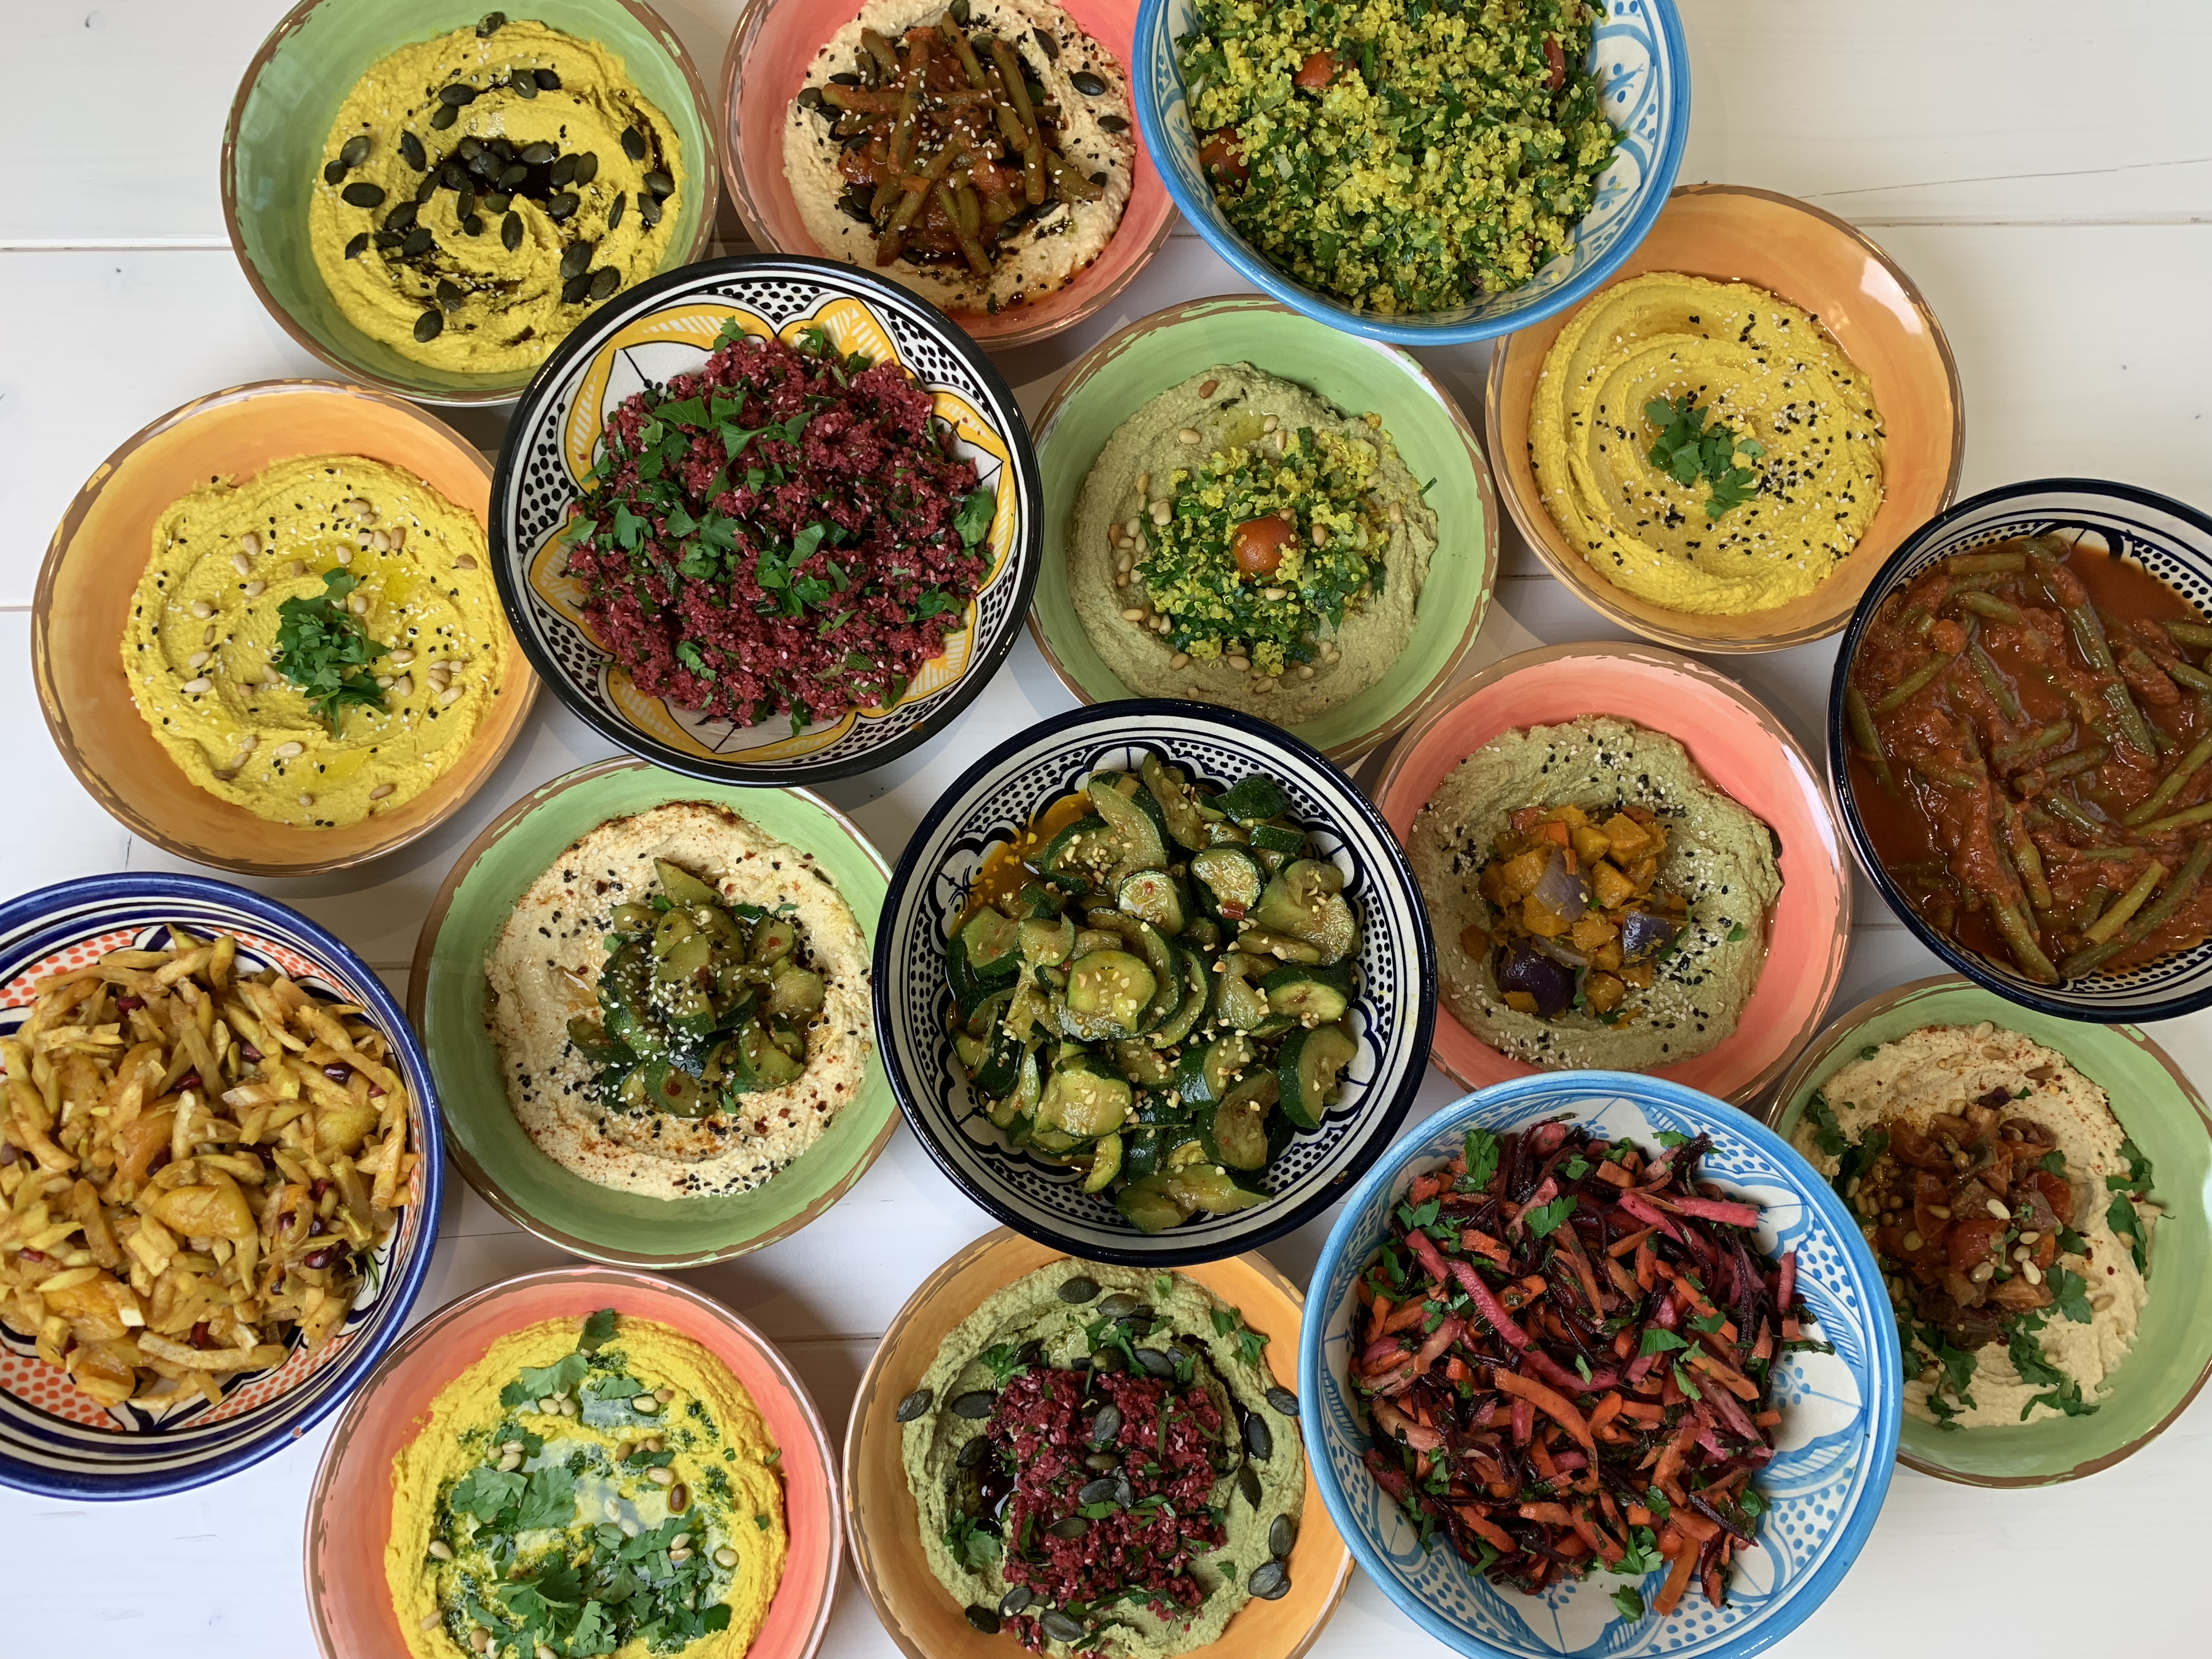 VERLOSUNG 🎉 Hummus-Lover aufgepasst: Wir verlosen 5 Bowl-Menüs mit homemade Limo!